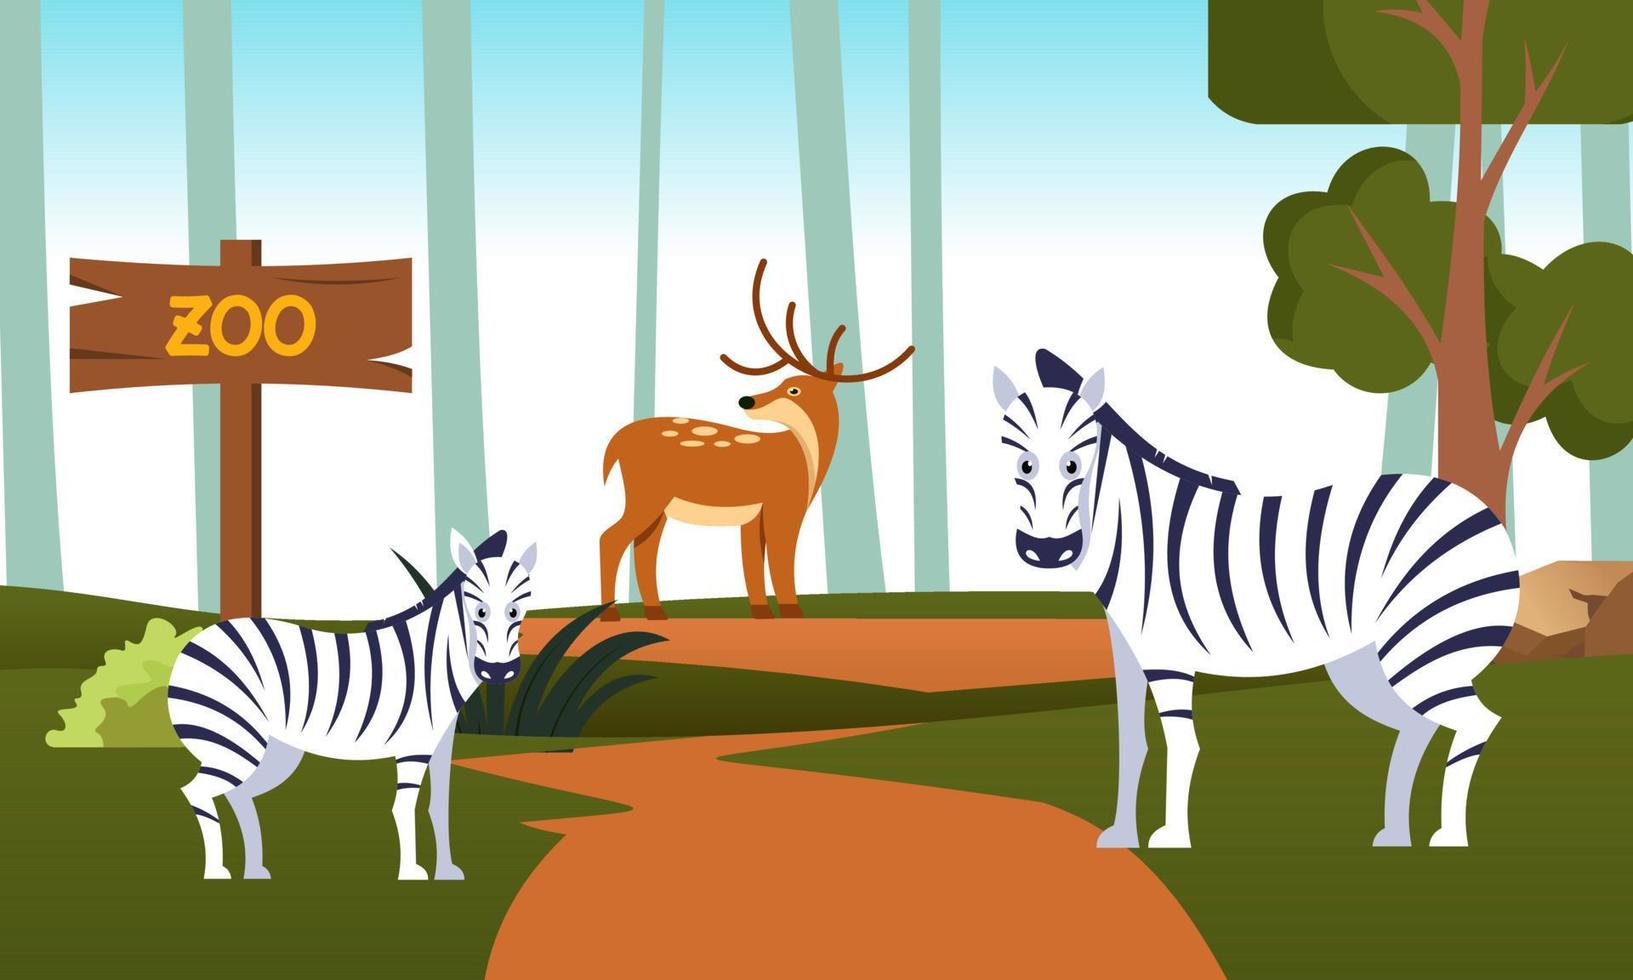 ilustración de dibujos animados del zoológico con animales de safari en el fondo del bosque vector